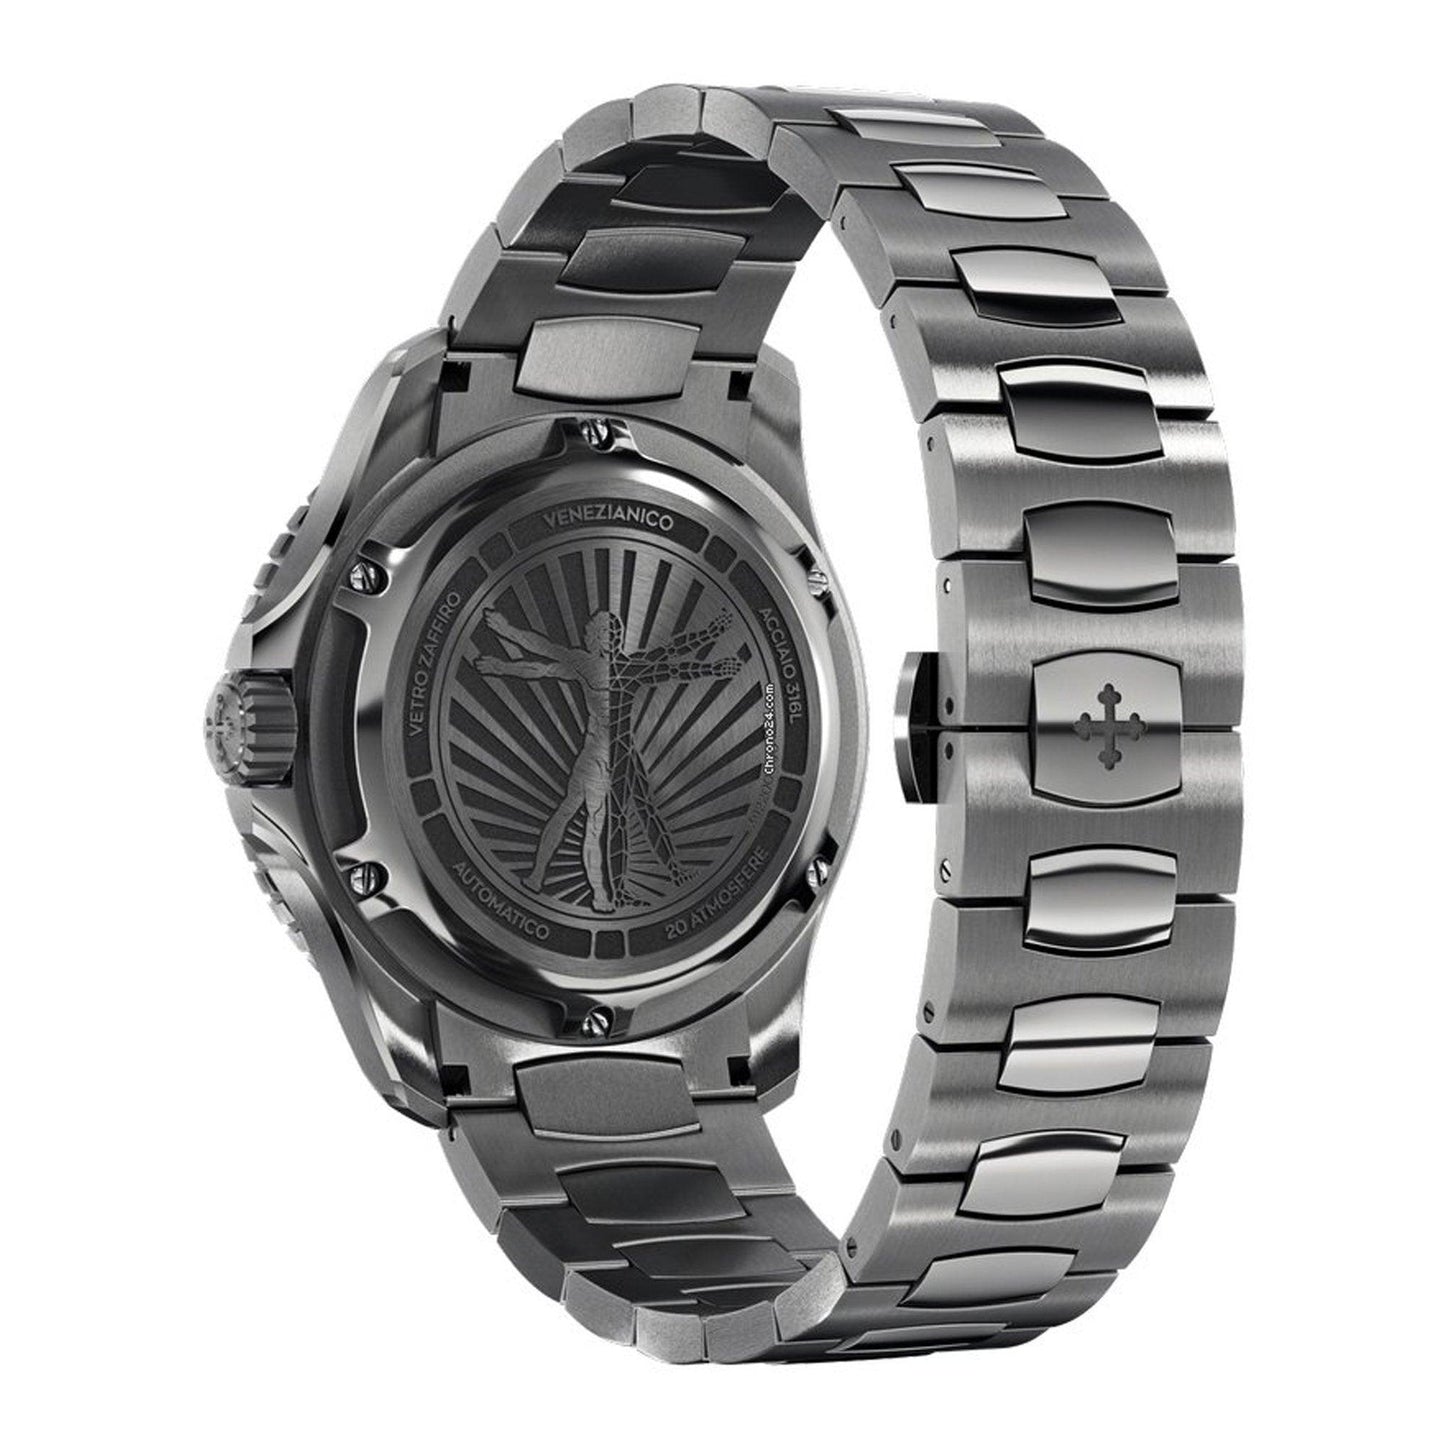 Venezianico Nereide Ultraleggero Canova 3921504C orologio uomo meccanico - Kechiq Concept Boutique